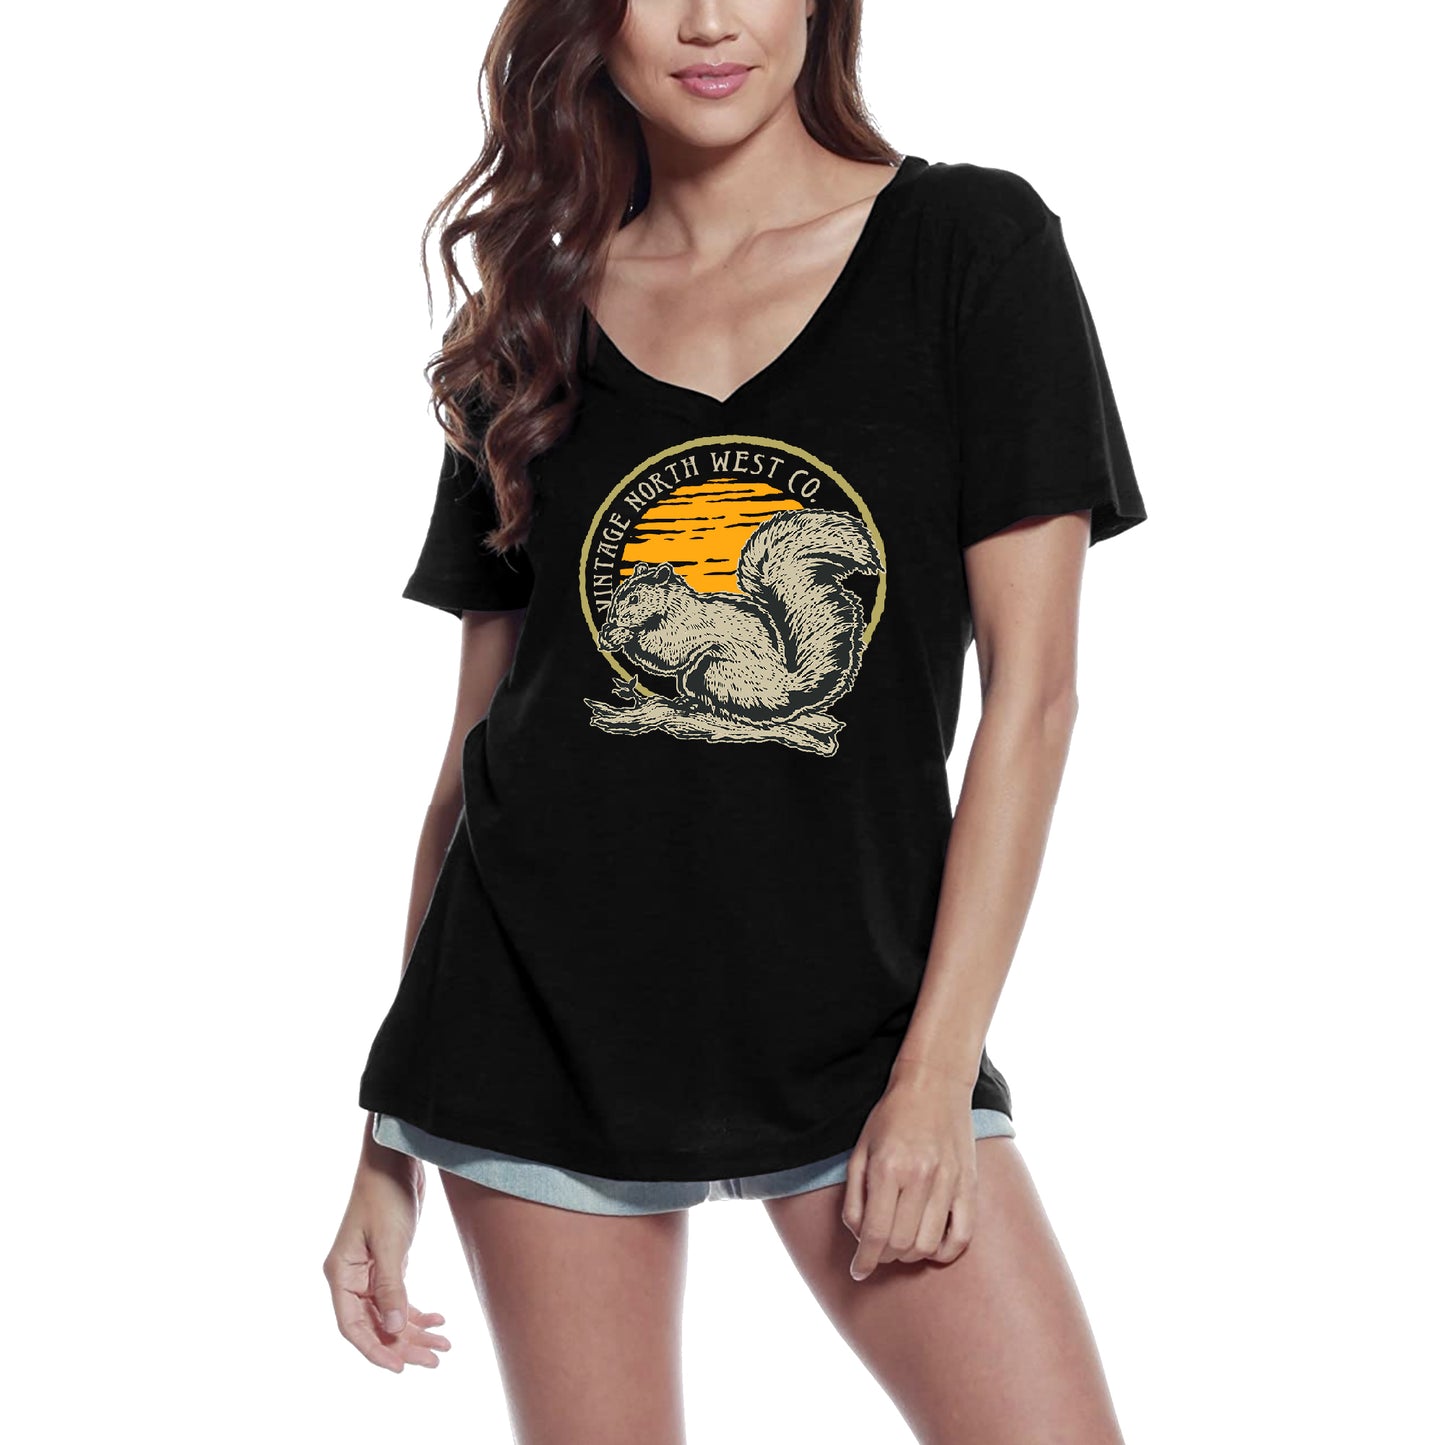 ULTRABASIC Grafik Damen T-Shirt mit V-Ausschnitt Eichhörnchen – North West Co – Vintage-Shirt